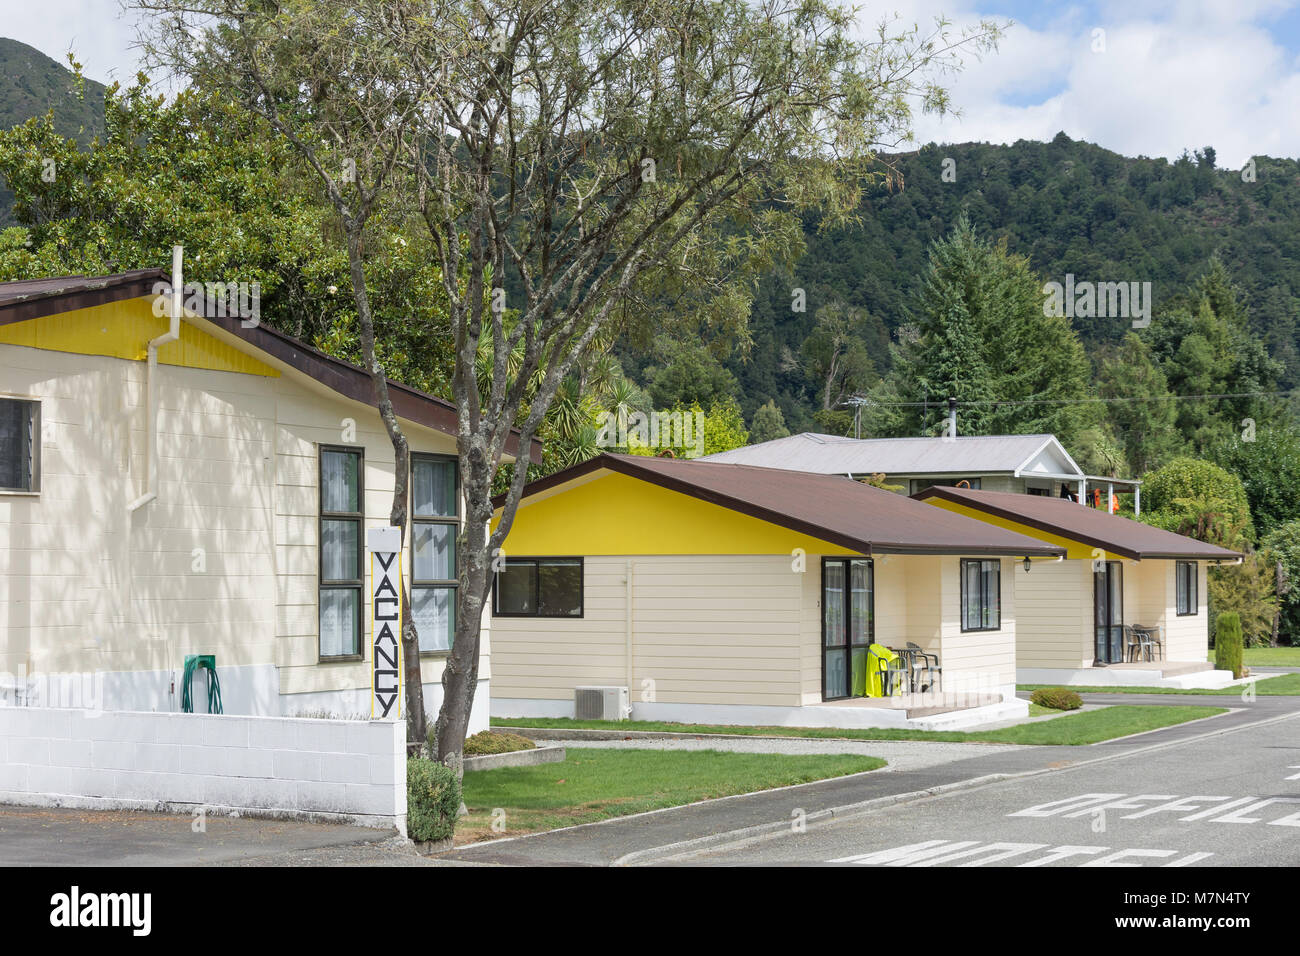 Penman Motel, Fairfax Street, Murchison, Tasman Region, New Zealand Stock Photo